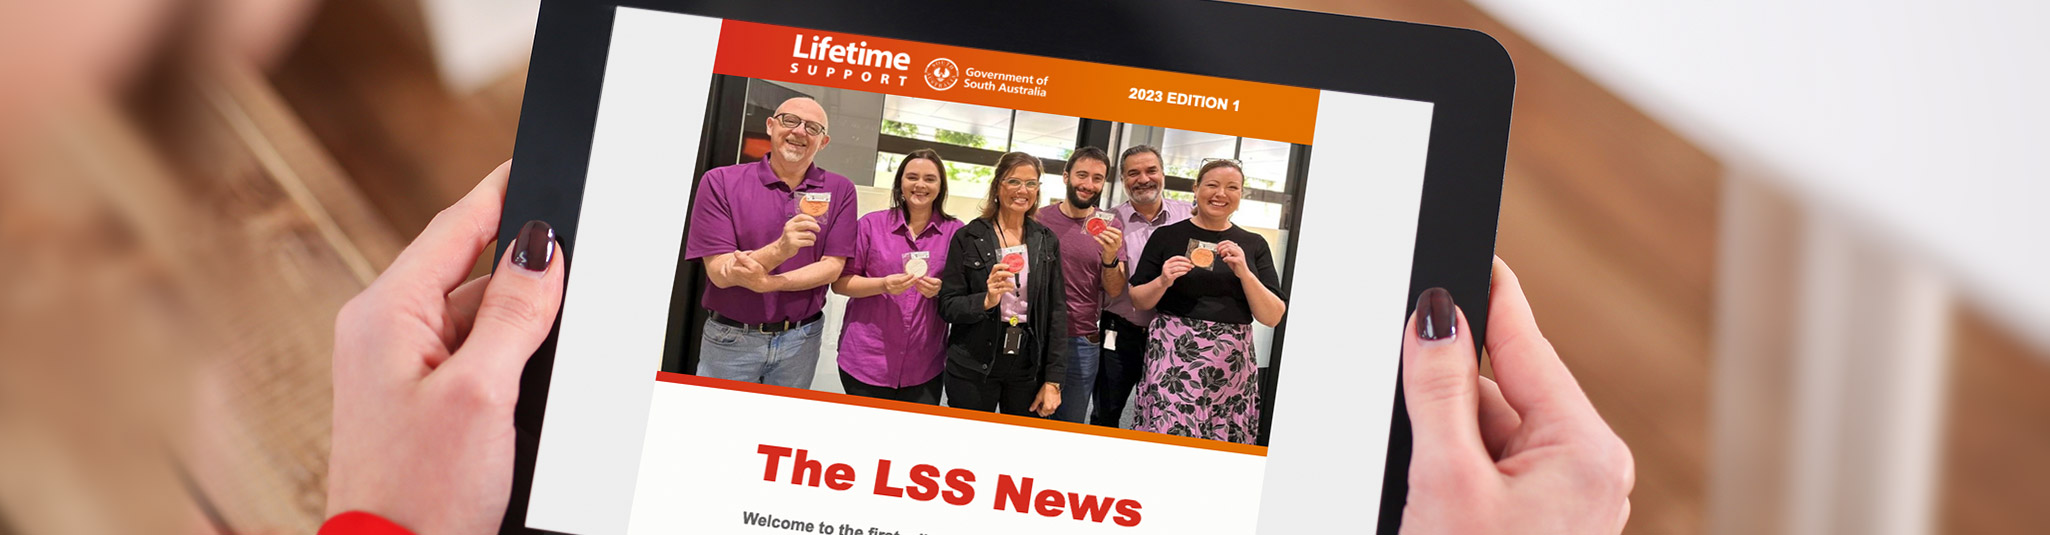 The LSS News